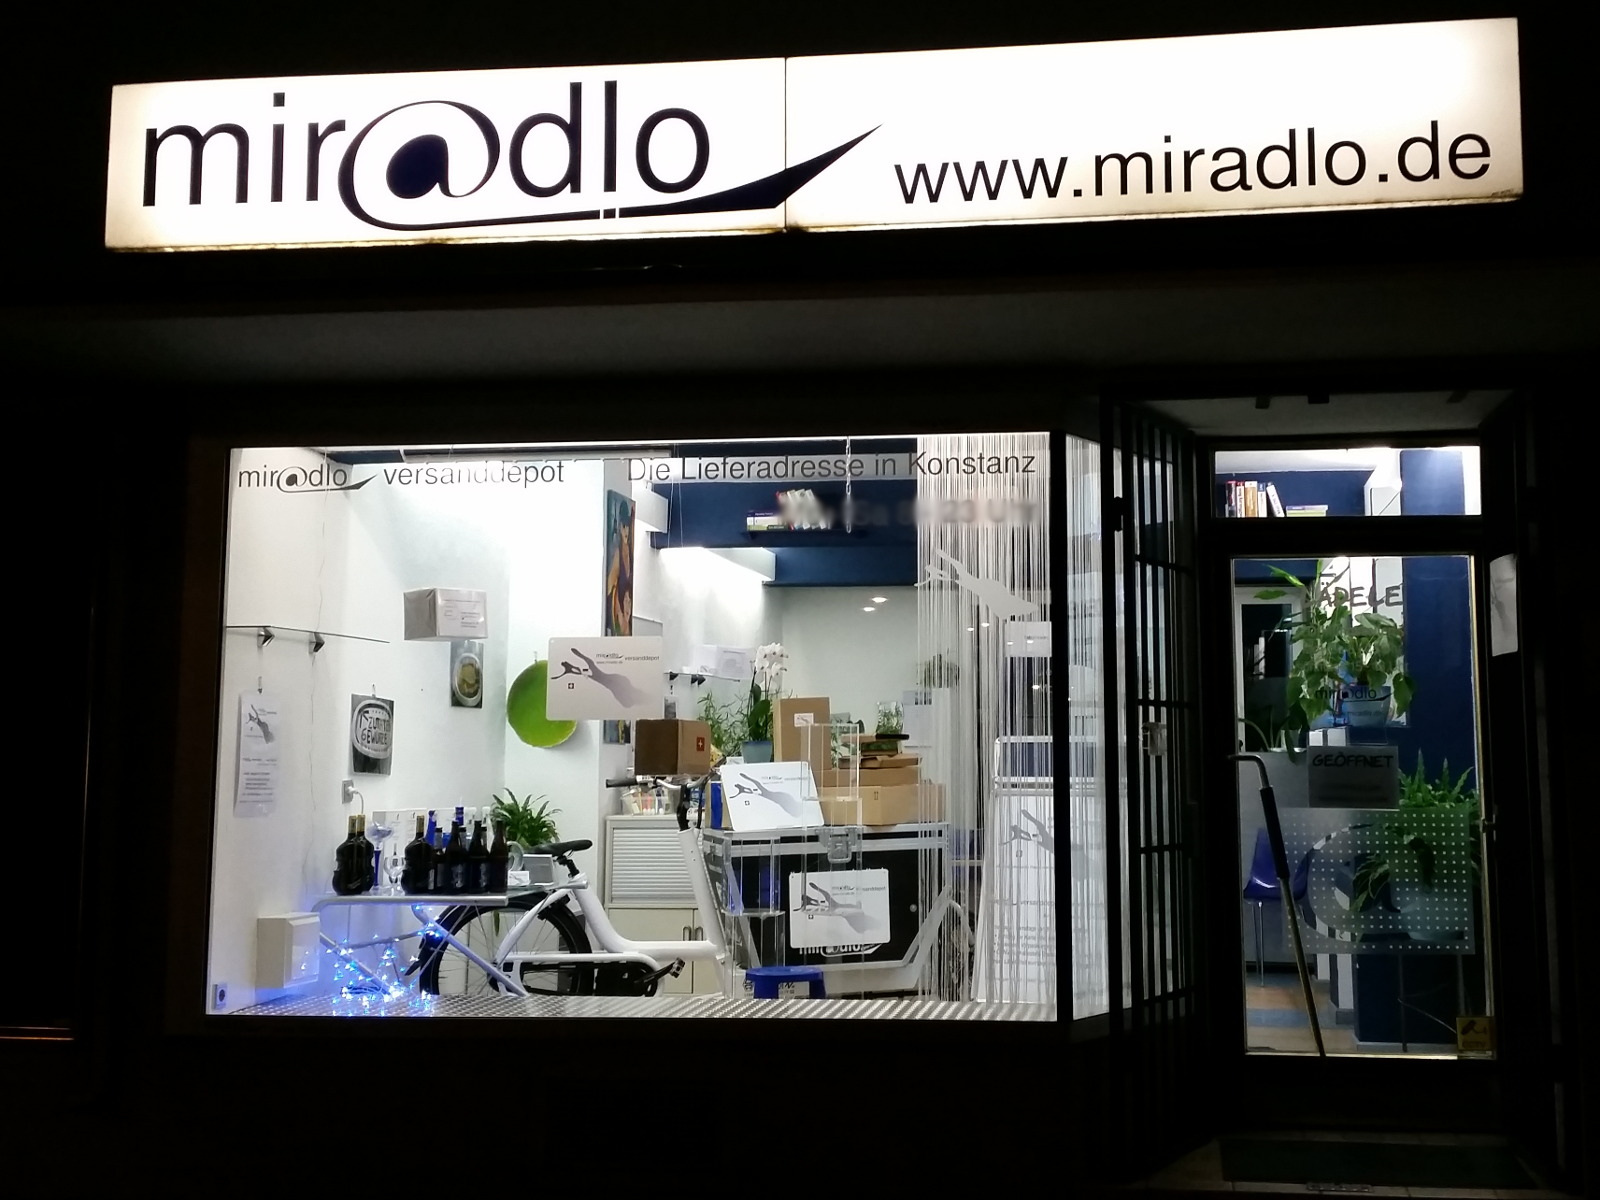 miradlo versanddepot - Die Lieferadresse in Konstanz - Mo-Sa 8-23 Uhr steht auf dem Schaufenster